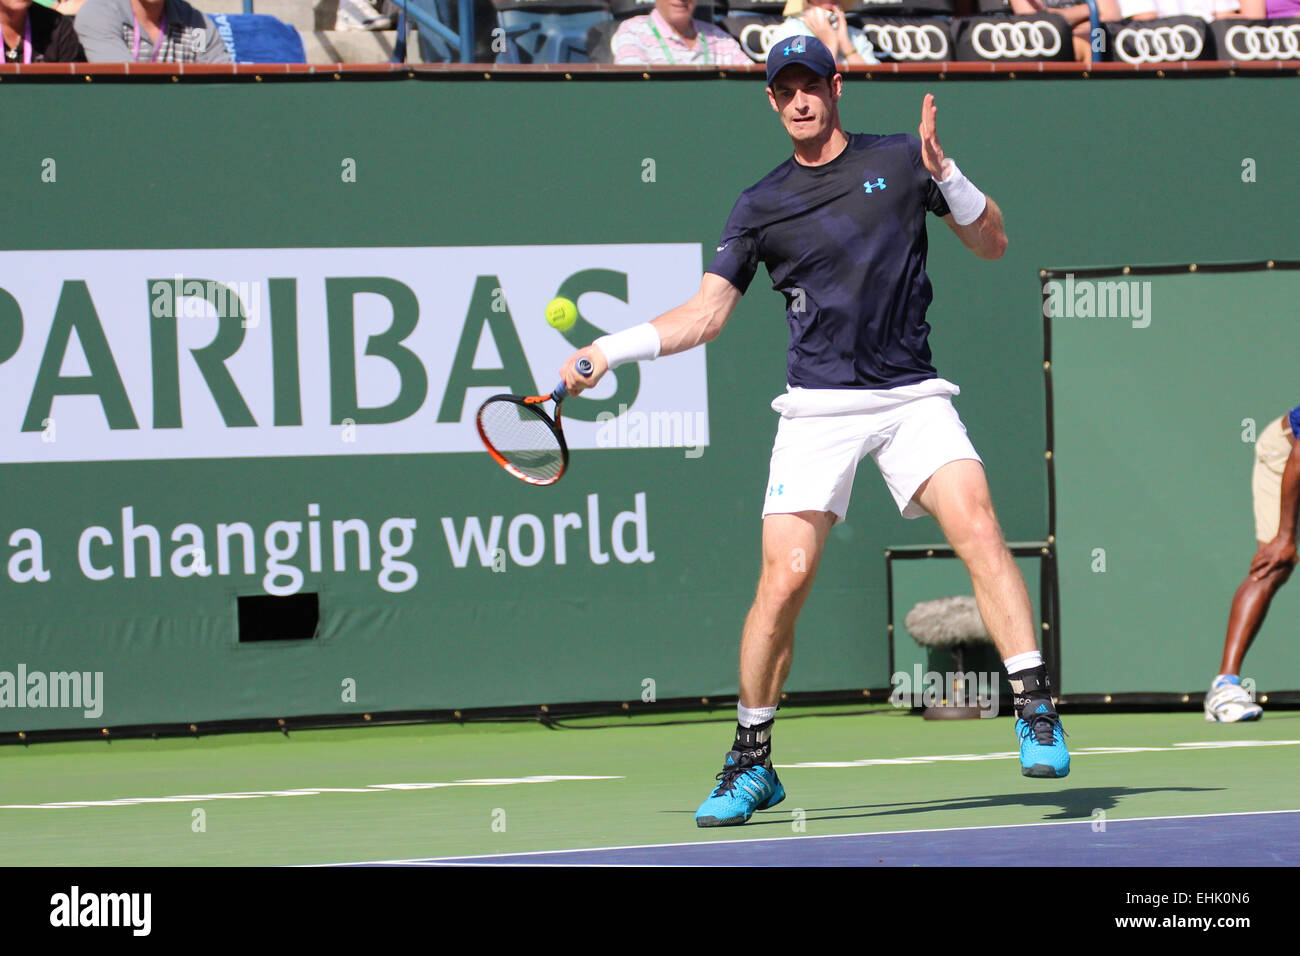 Indian Wells, le 14 mars 2015, joueur de tennis britannique Andy Murray bat Vasek Pospisil du Canada dans le Simple Messieurs 2ème série (score 6-1 6-3). Credit : Werner - Photos/Alamy Live News Banque D'Images